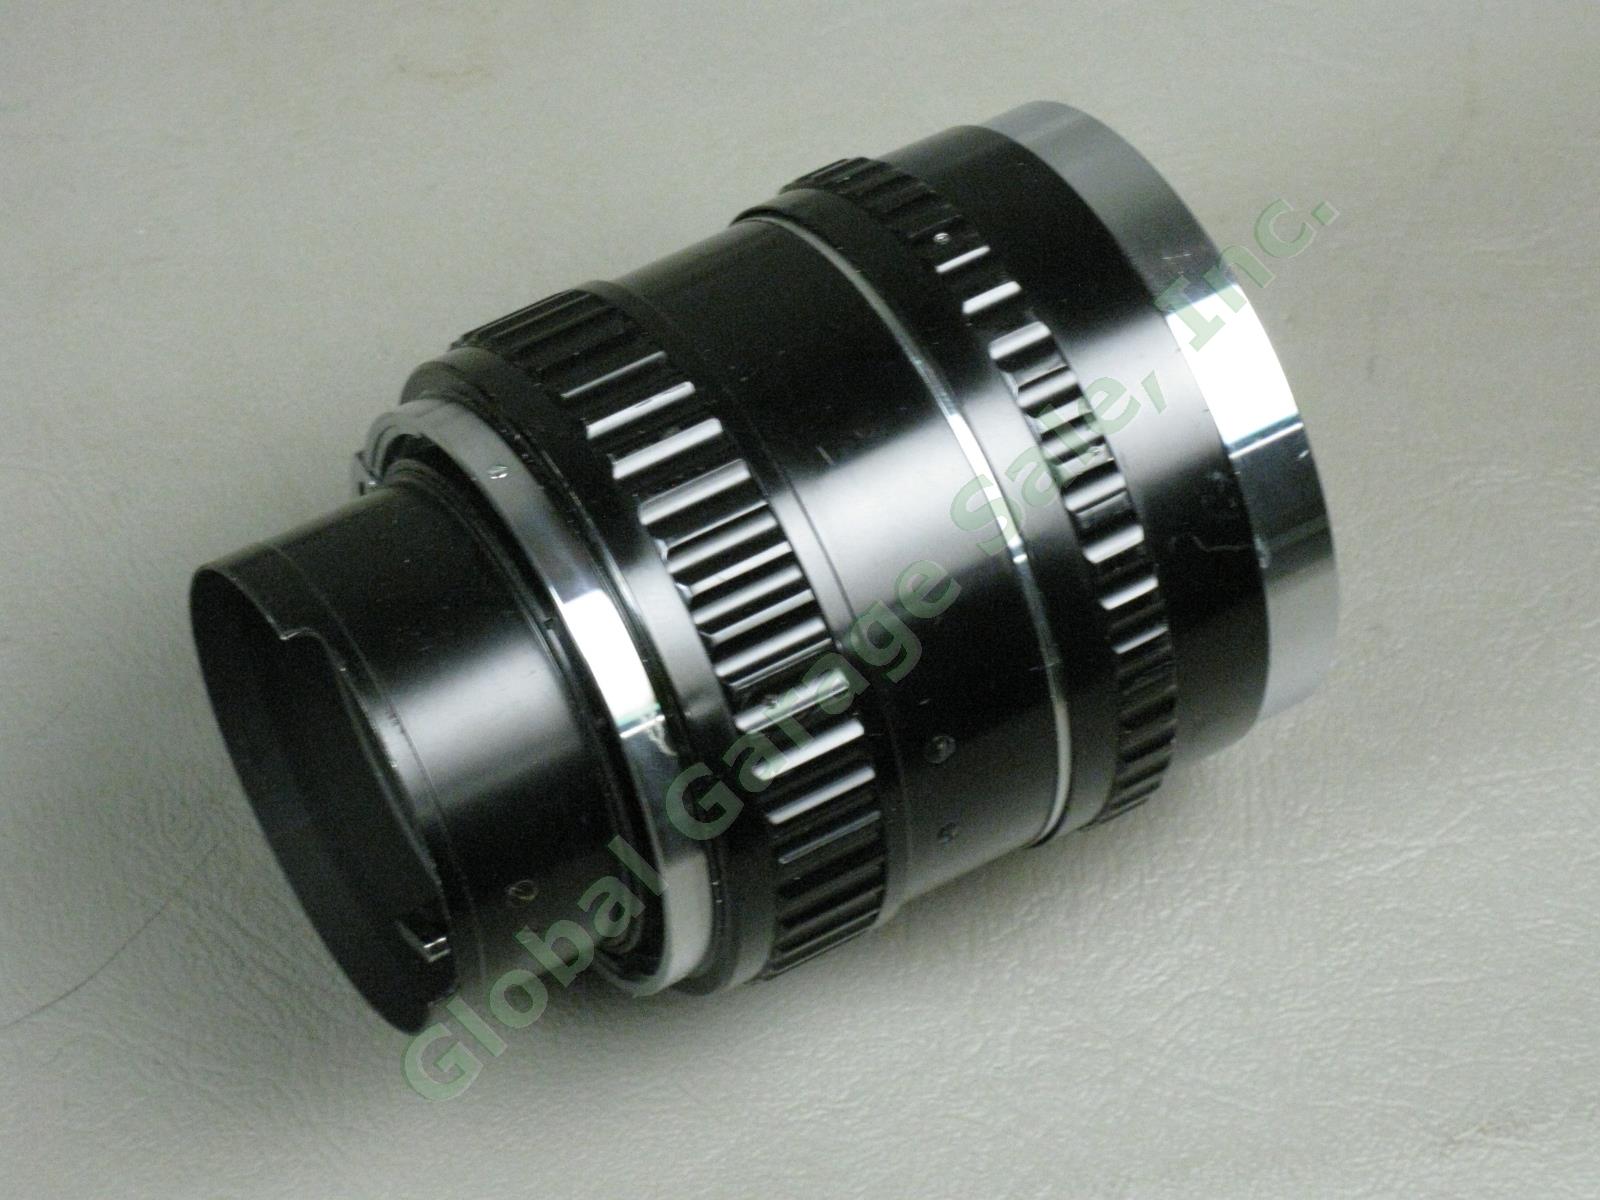 Vintage Nippon Nikkor-Q 13.5cm 135mm f/3.5 Camera Lens For Bronica Z/D + Hood NR 4